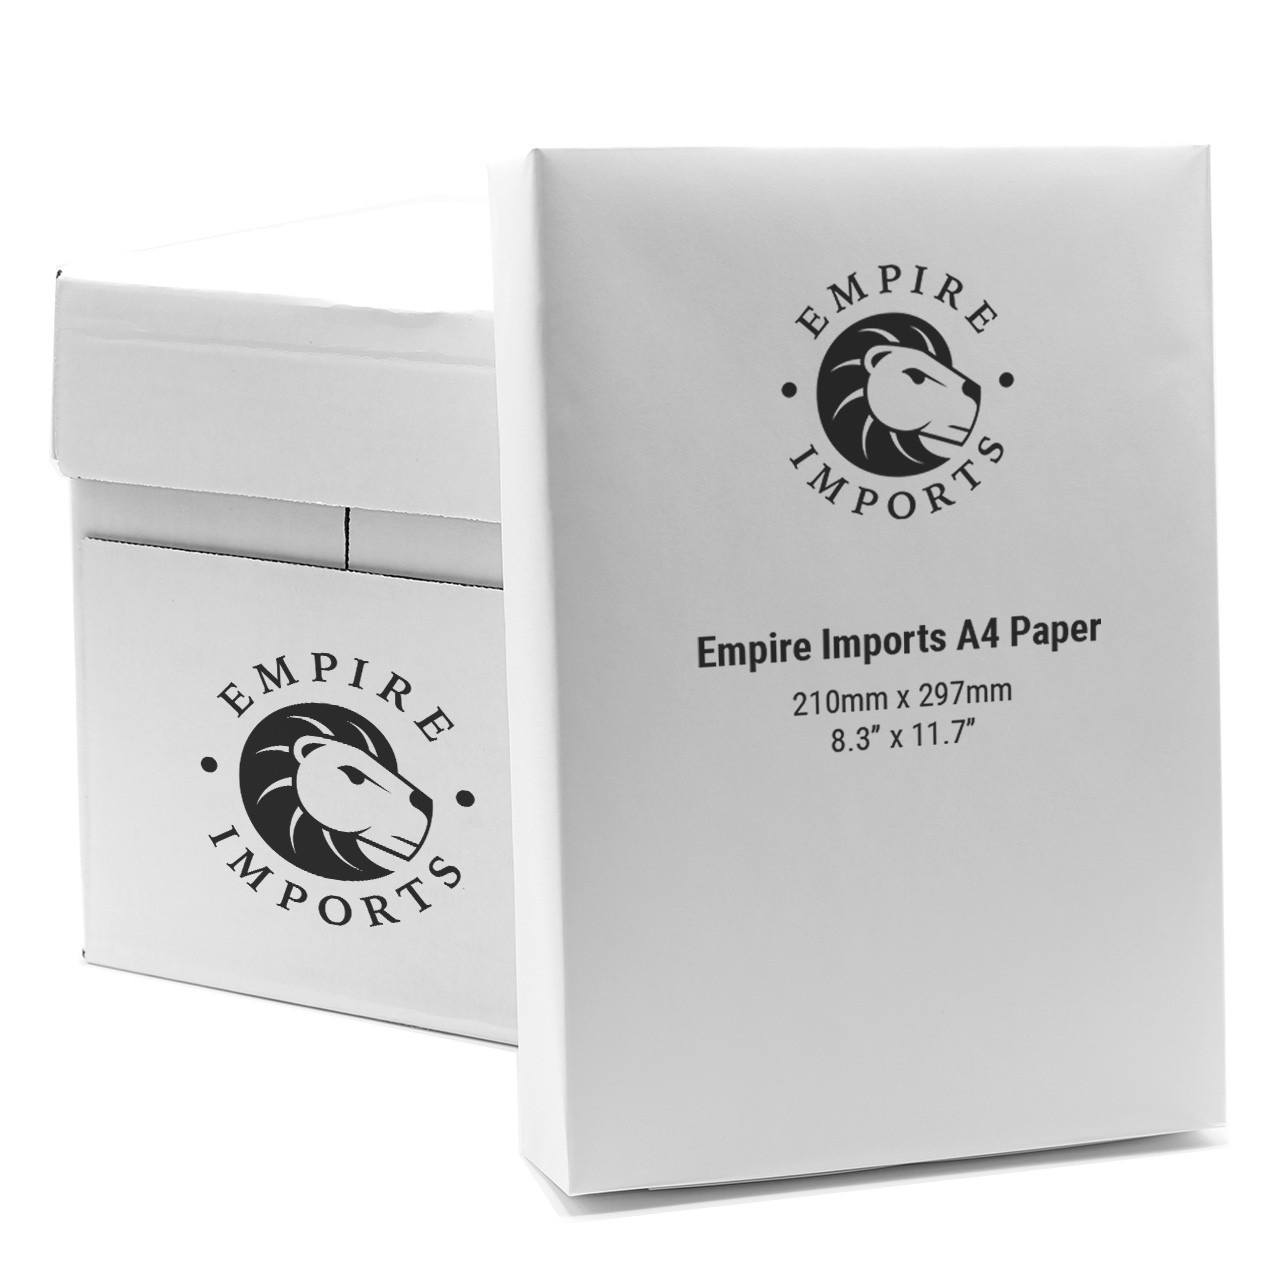 Multi-Purpose A4 Paper, 20 lb., 1 Case - Empire Imports